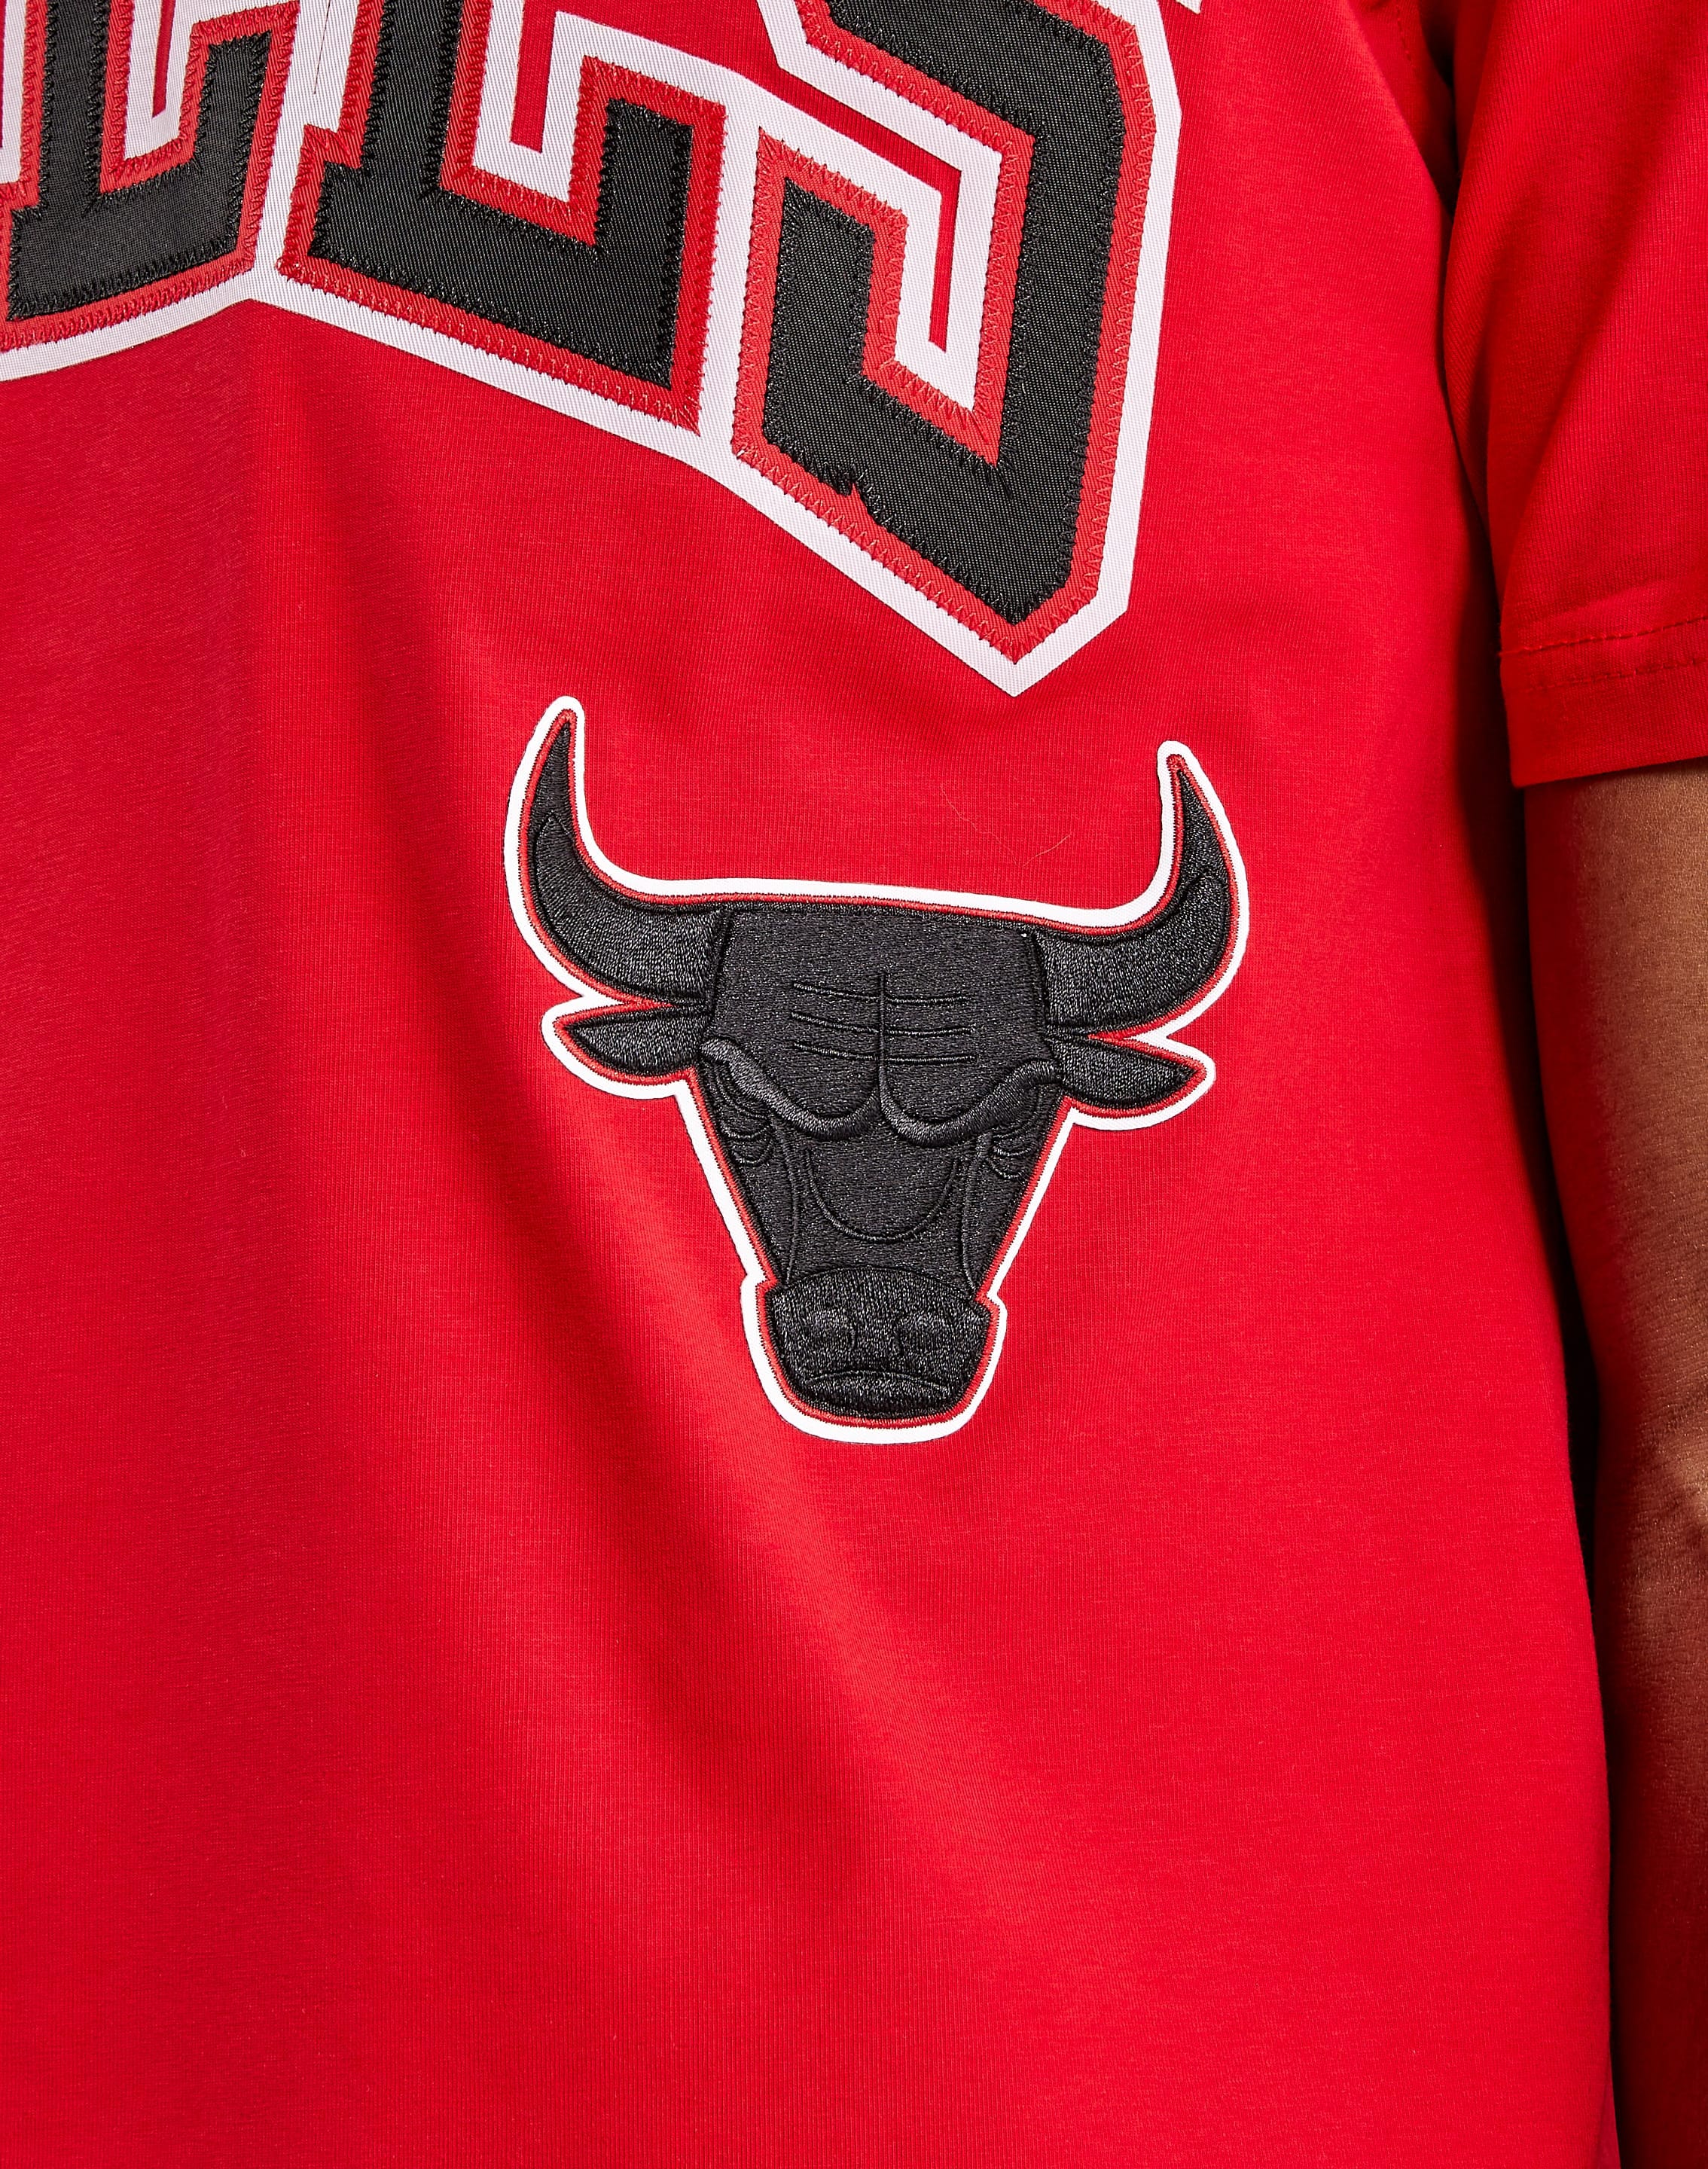 NBA Chicago Bulls full zip red jacket Men's Small Bull Graphic On Back